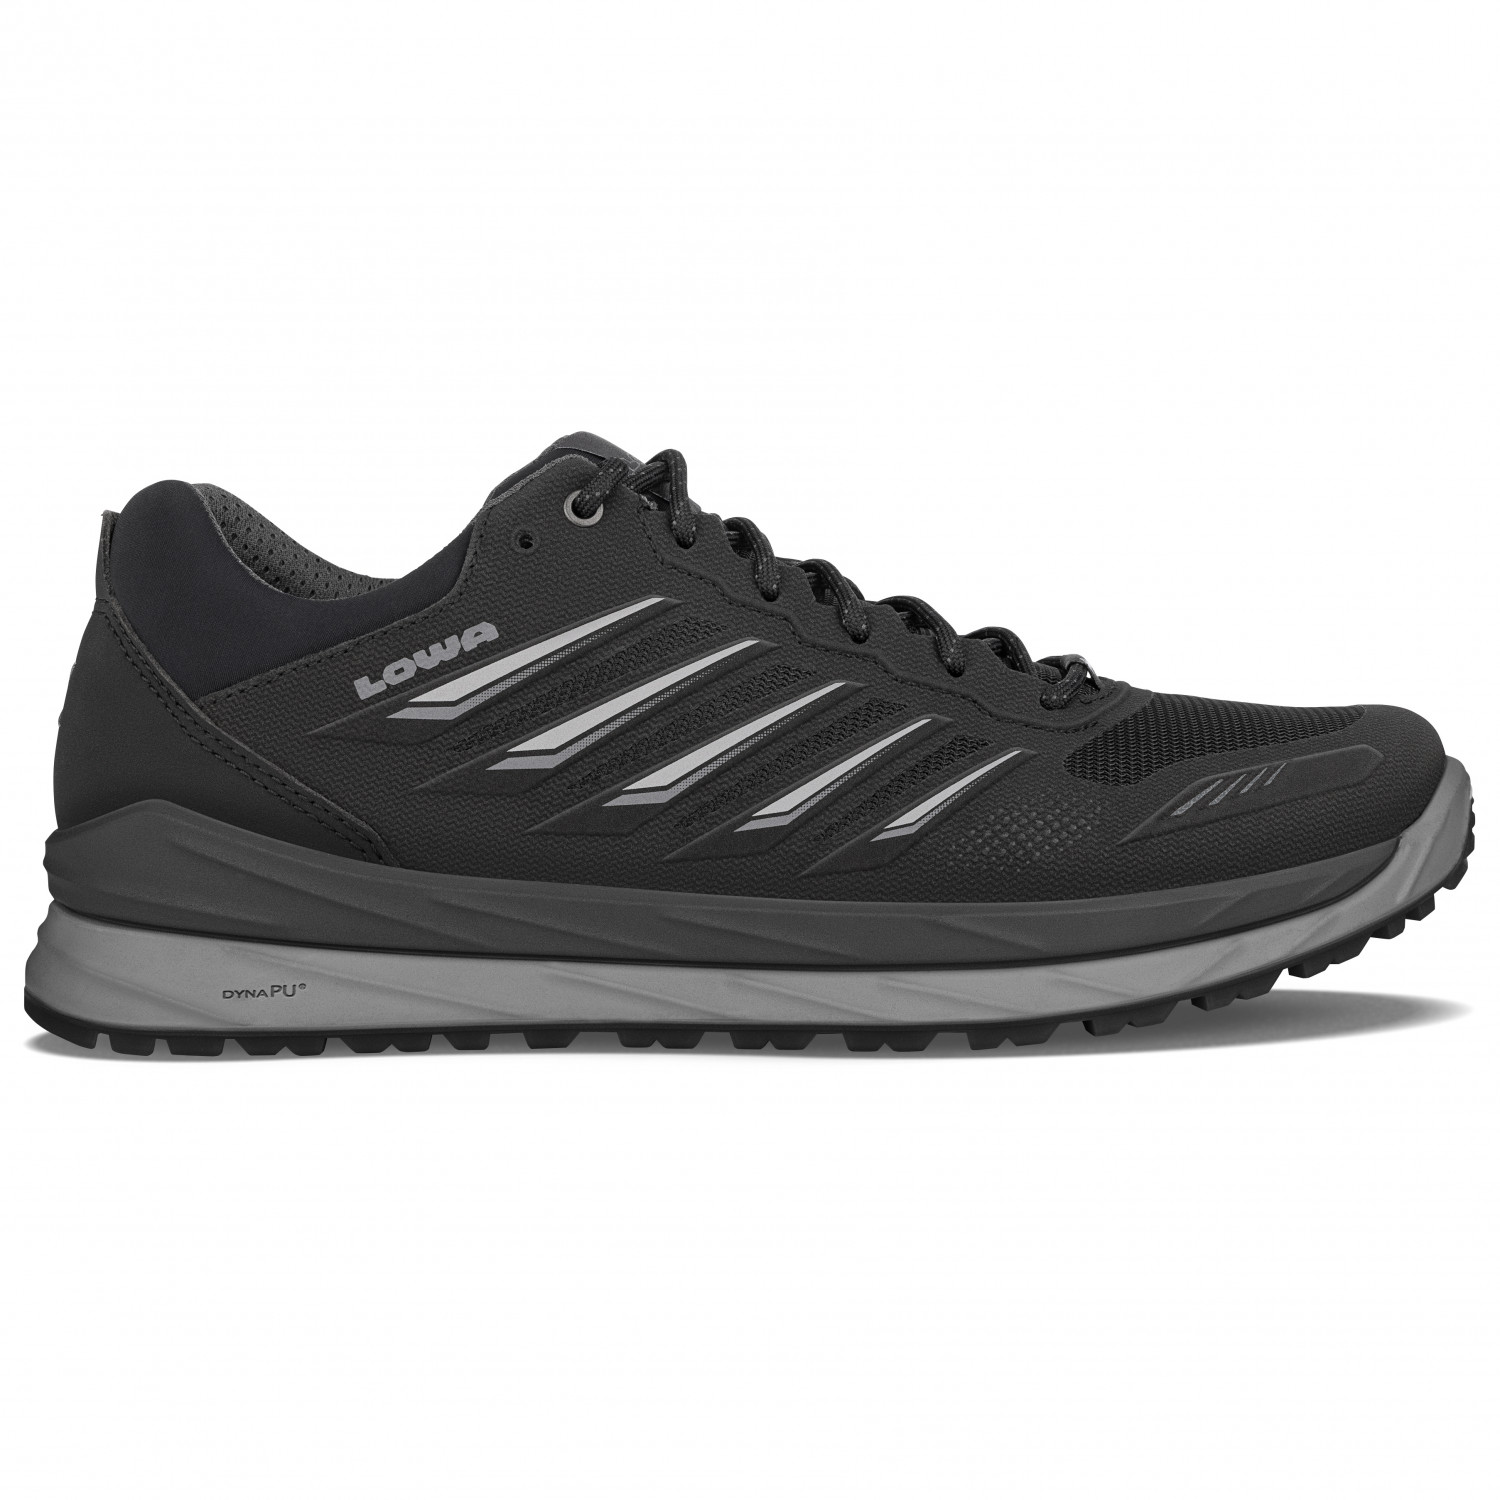 Мультиспортивная обувь Lowa Axos GTX LO, цвет Black/Grey